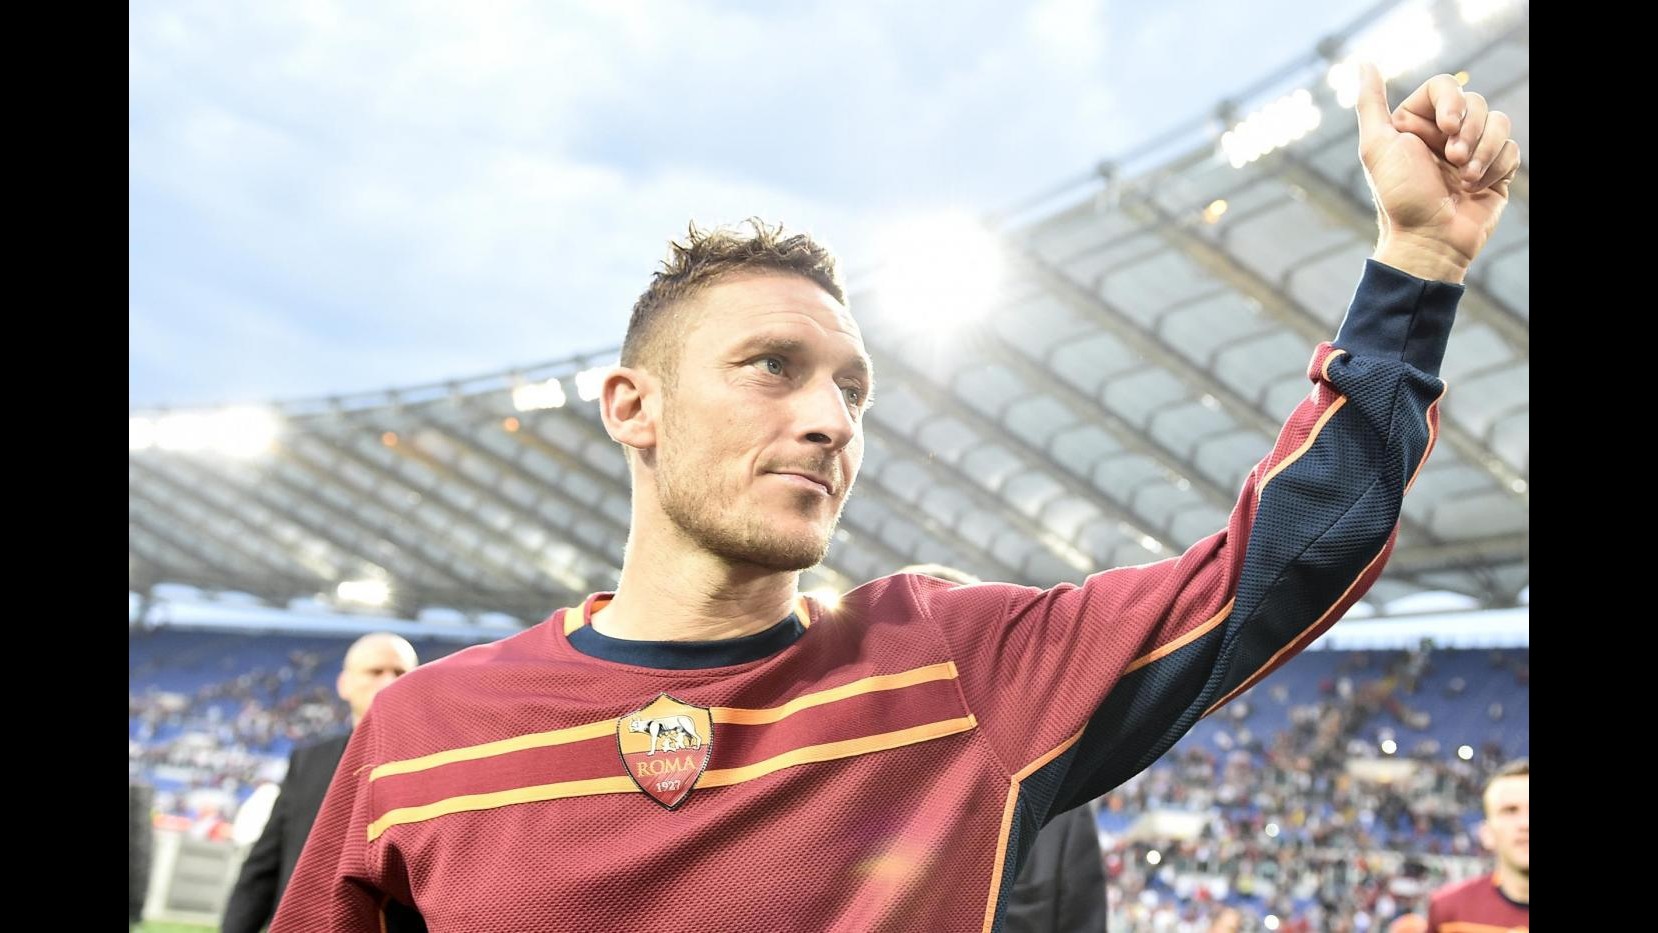 L’appello di Totti: Napoli-Roma sia festa sport senza violenza. Mai più morti nel calcio